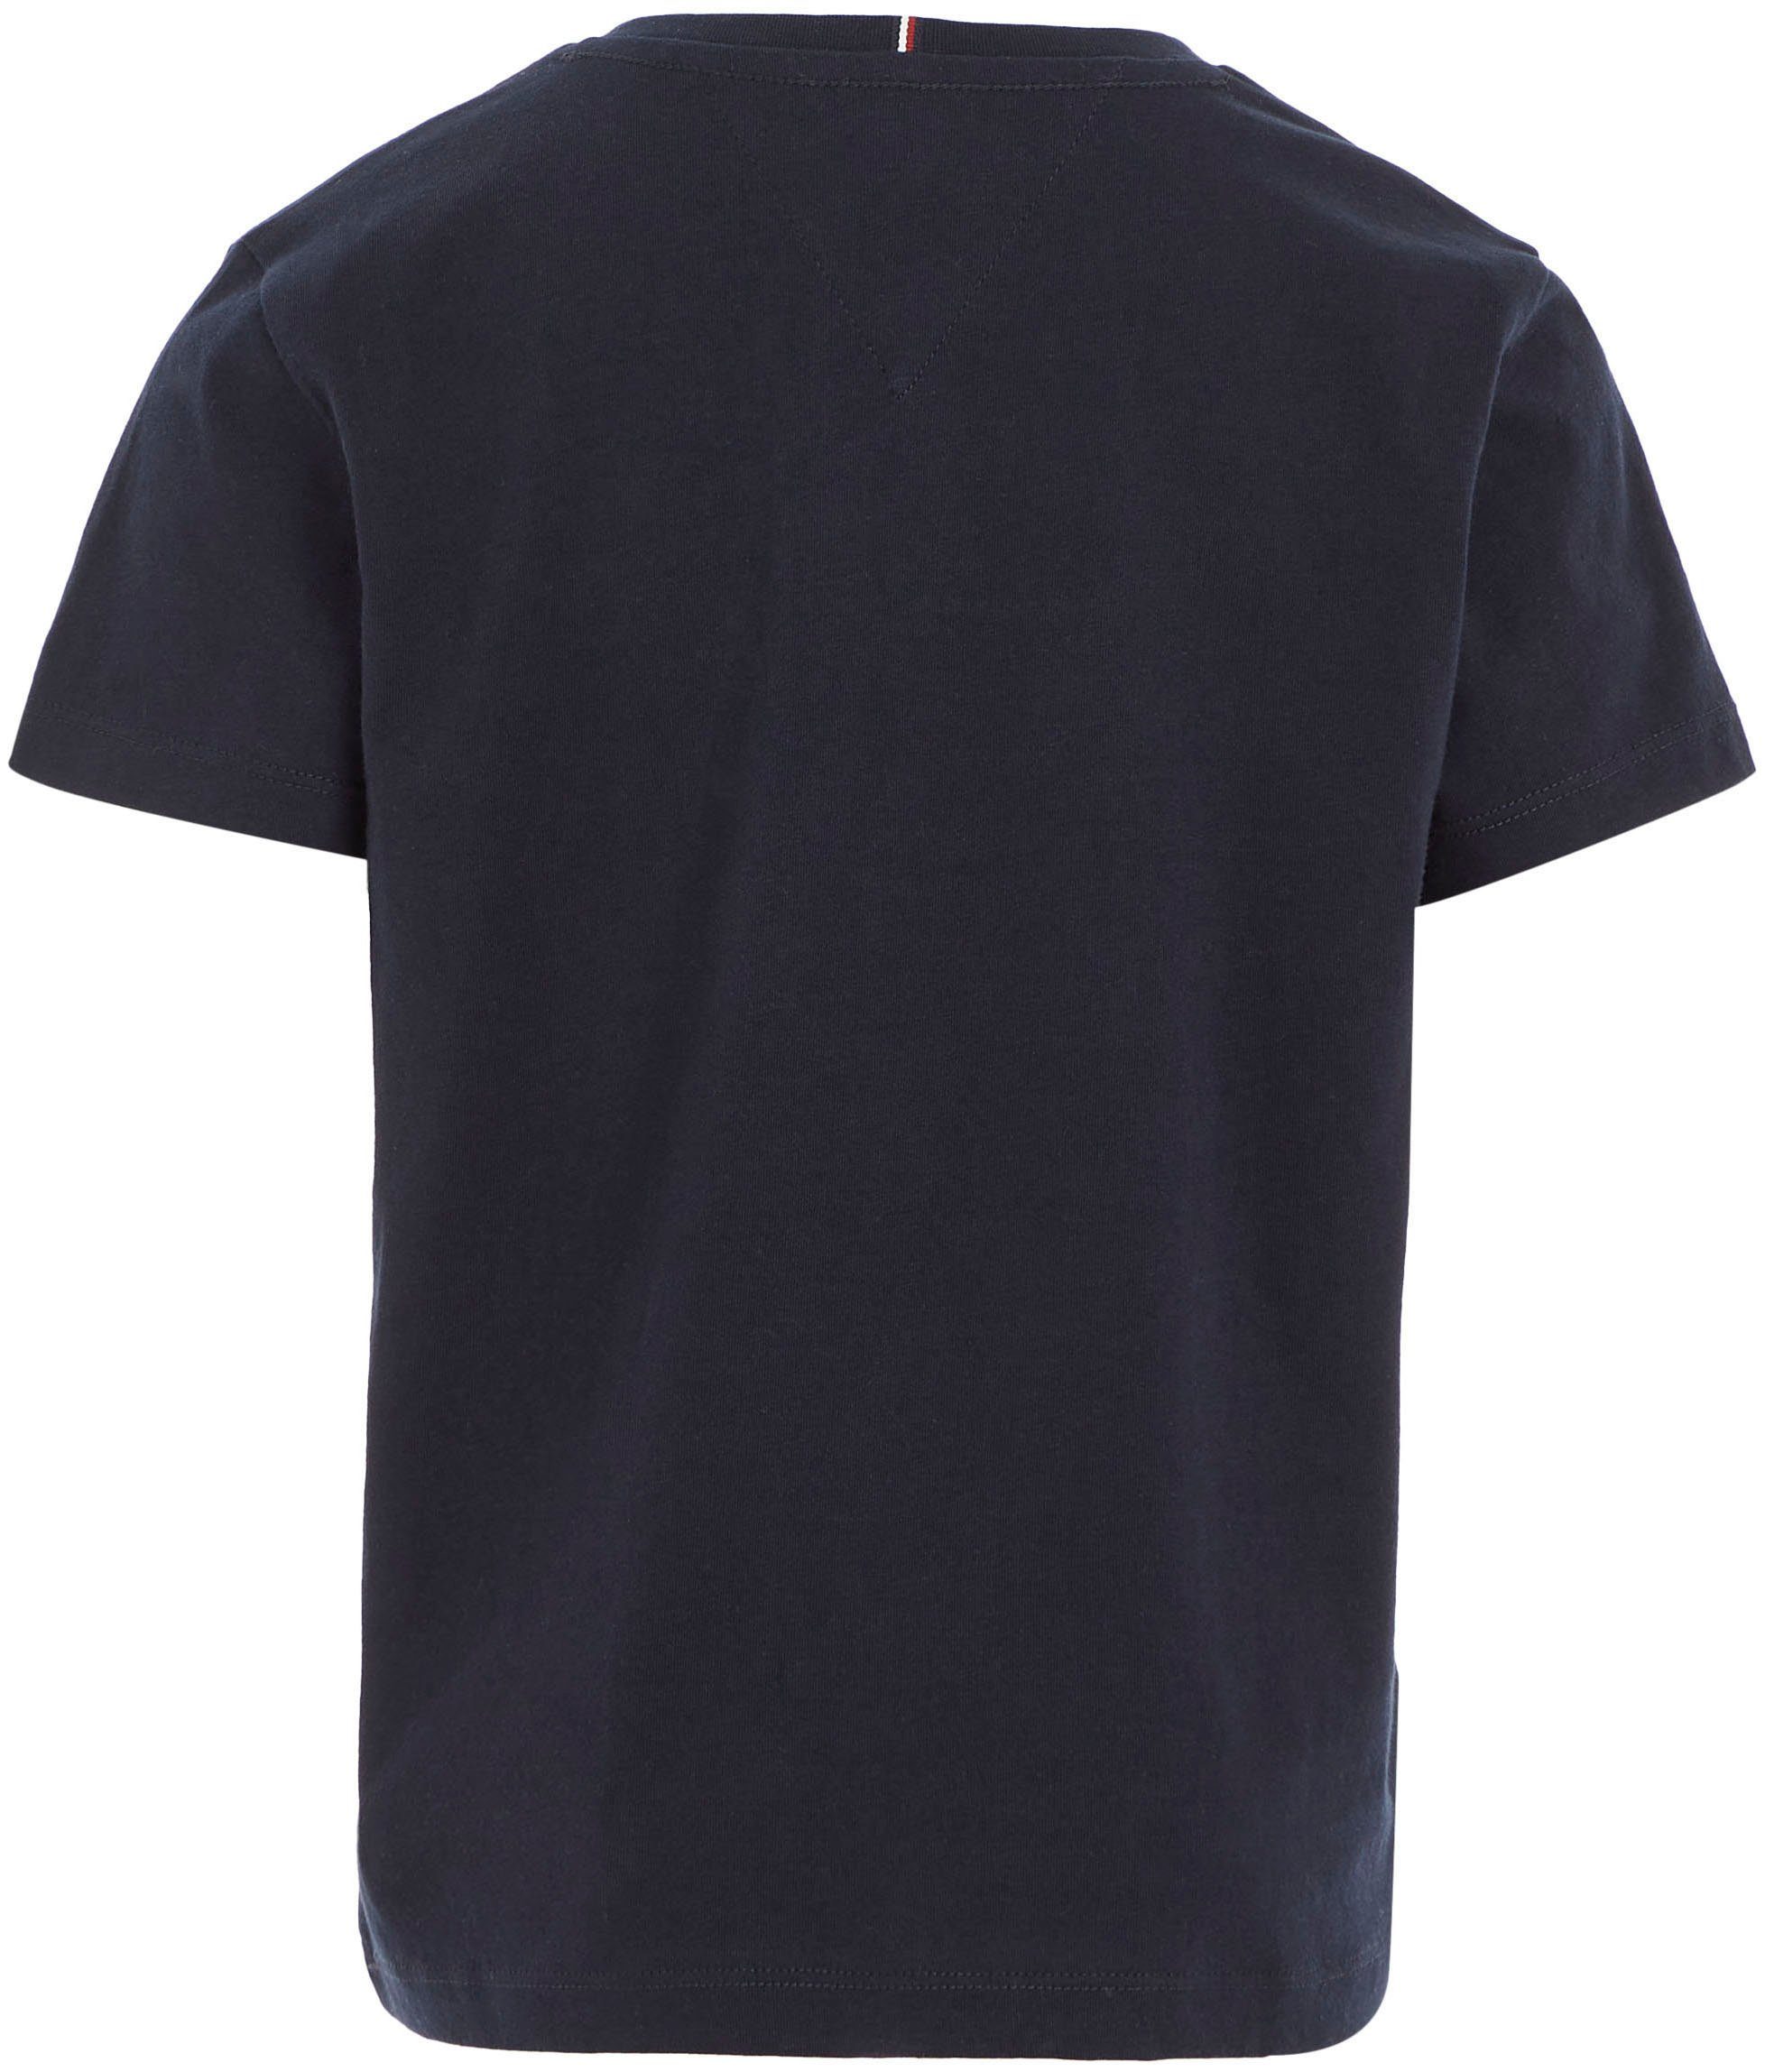 Tommy Hilfiger TEE mit S/S dunkelblau modischem MONOTYPE auf T-Shirt Brust der Hilfiger-Logoschriftzug